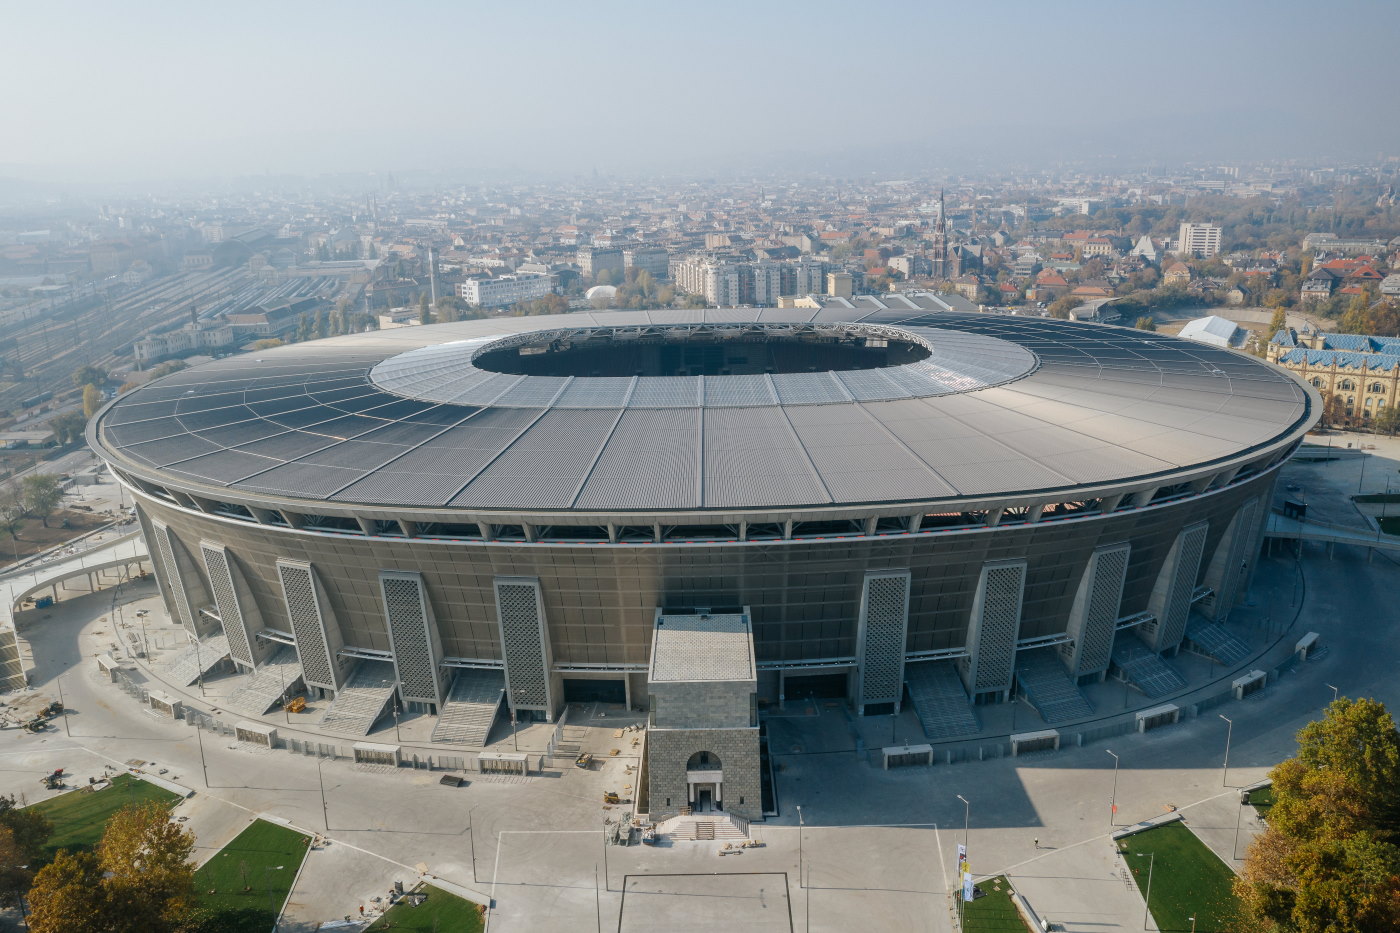 Ferenc Puskas Stadium